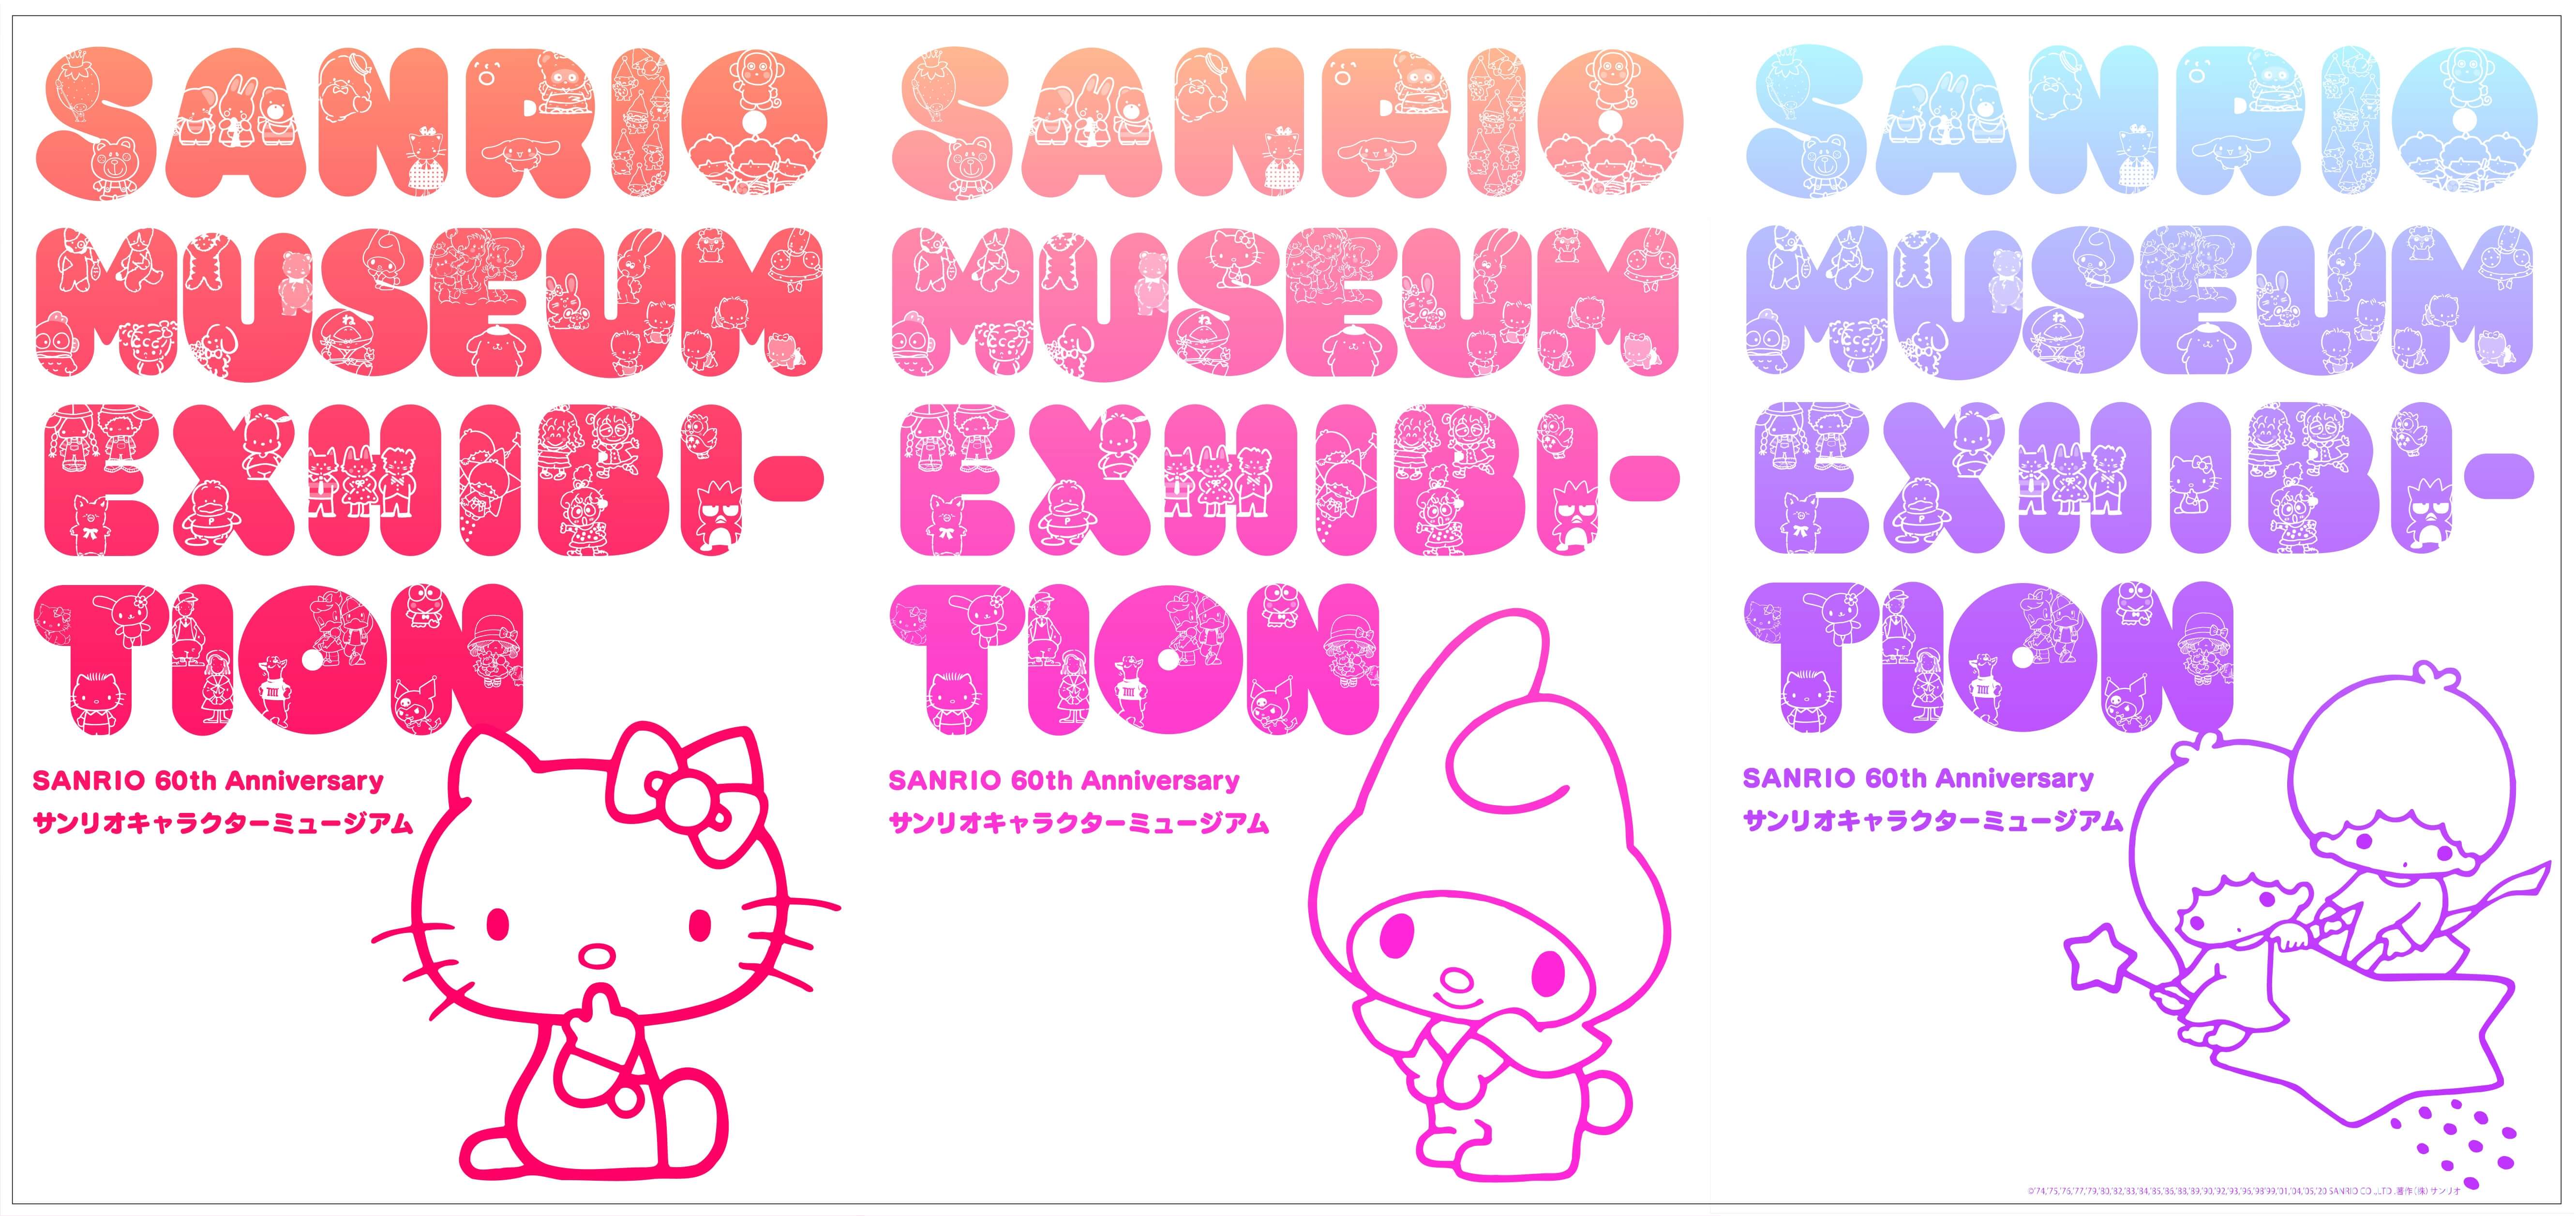 サンリオ60周年記念 サンリオキャラクターミュージアム 六本木ヒルズで開催 Moshi Moshi Nippon もしもしにっぽん